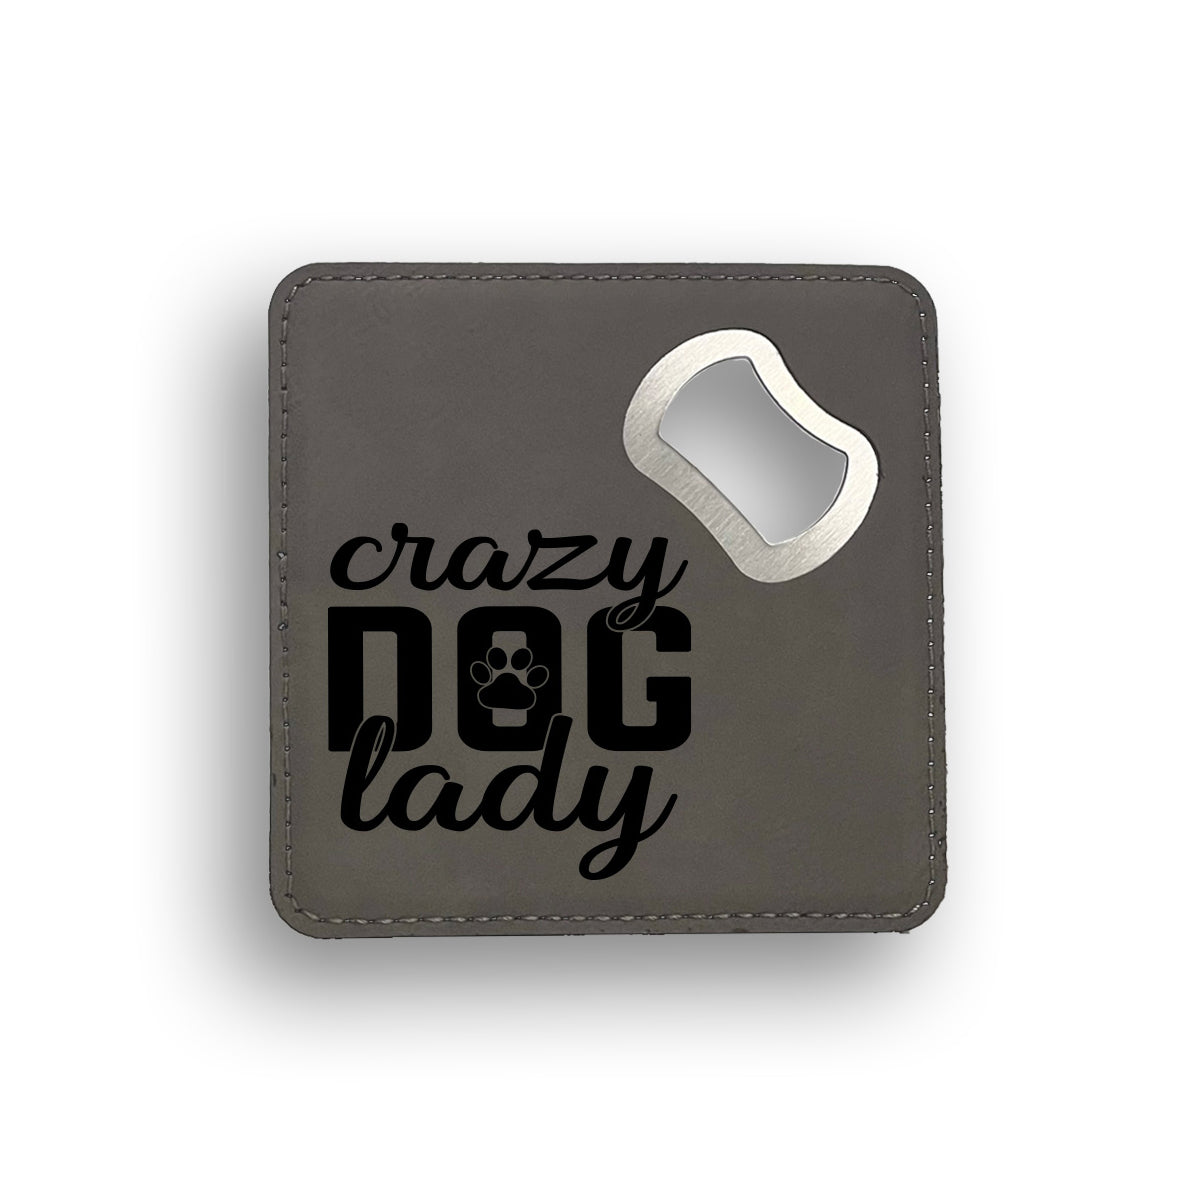 Crazy Dog Lady 2 Bottle Opener Coaster